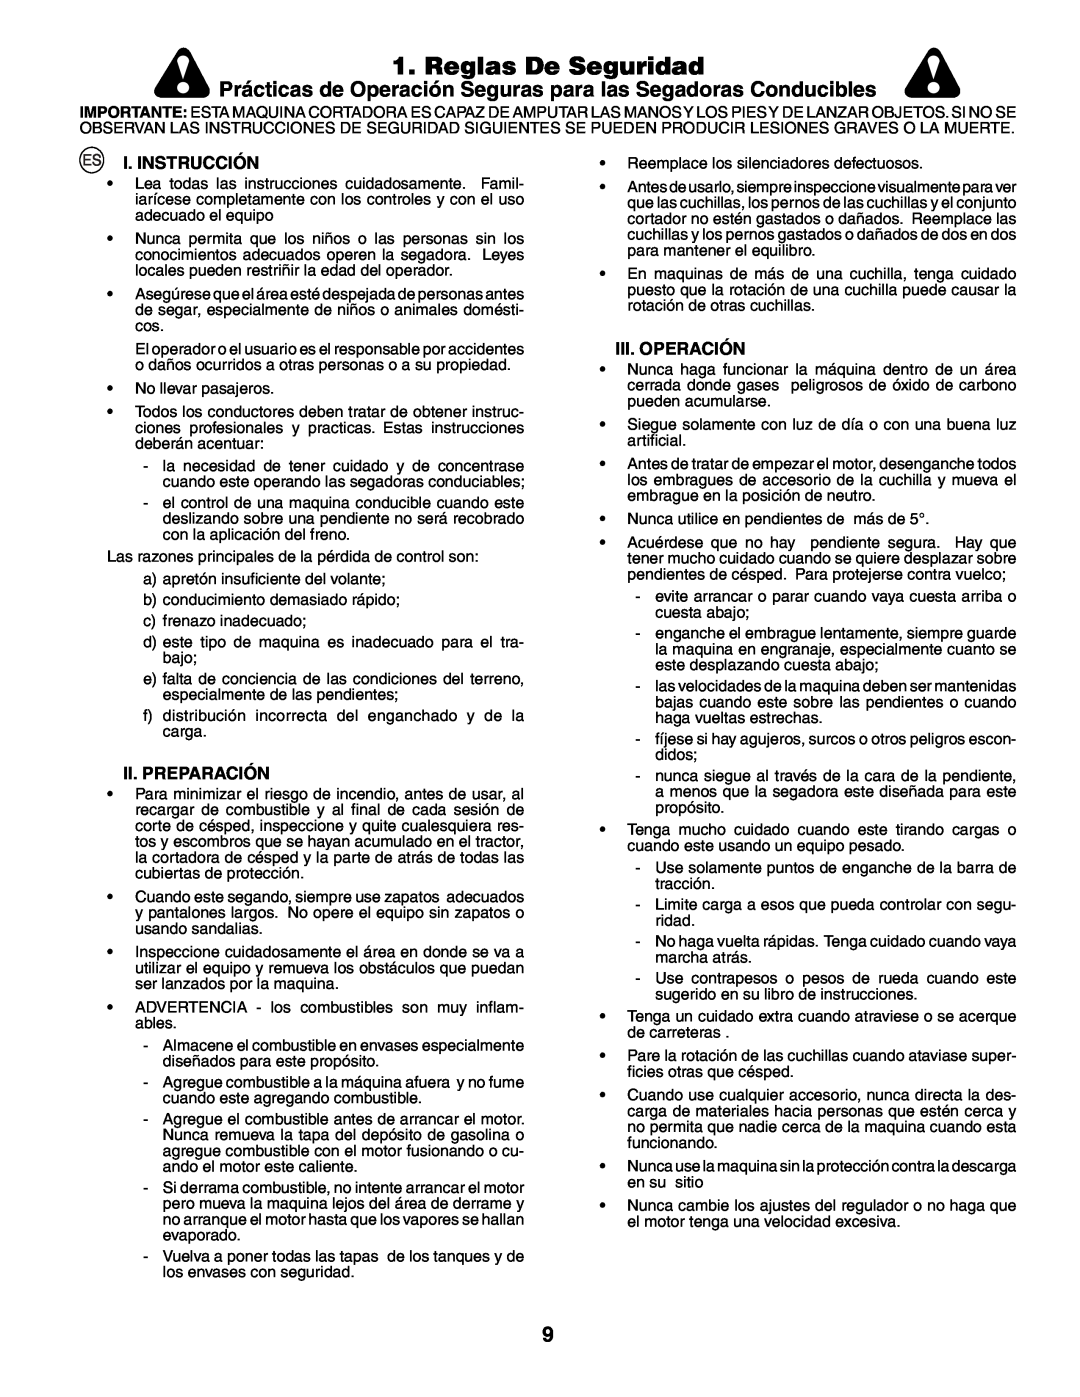 Husqvarna YTH210XP Reglas De Seguridad, Prácticas de Operación Seguras para las Segadoras Conducibles, I. Instrucción 